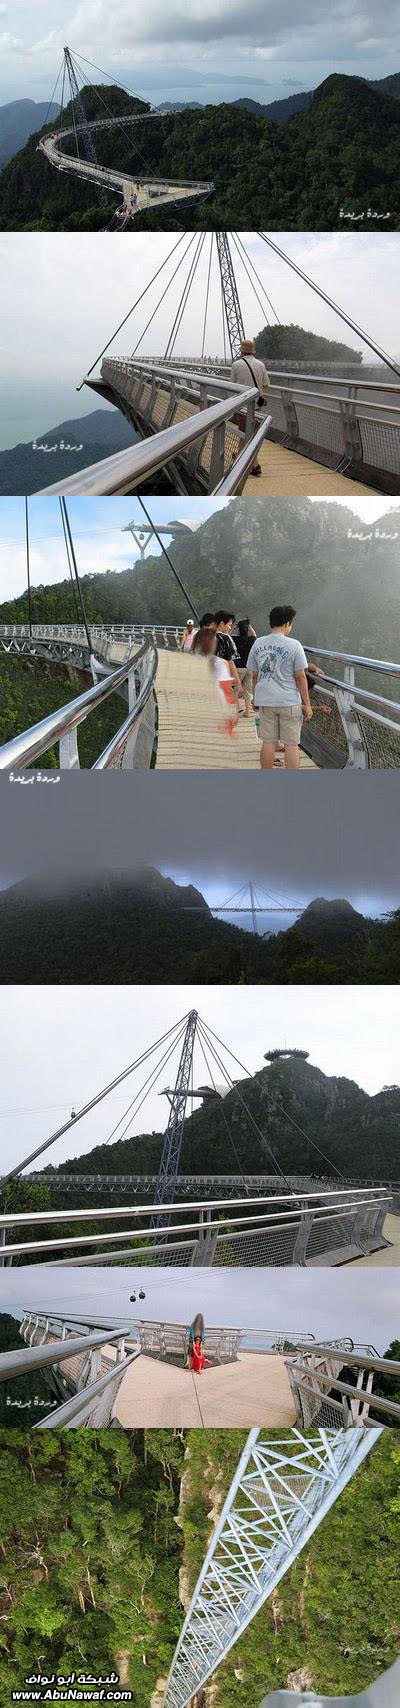 صور : جسر ماليزيا المعلق + صور منوعة